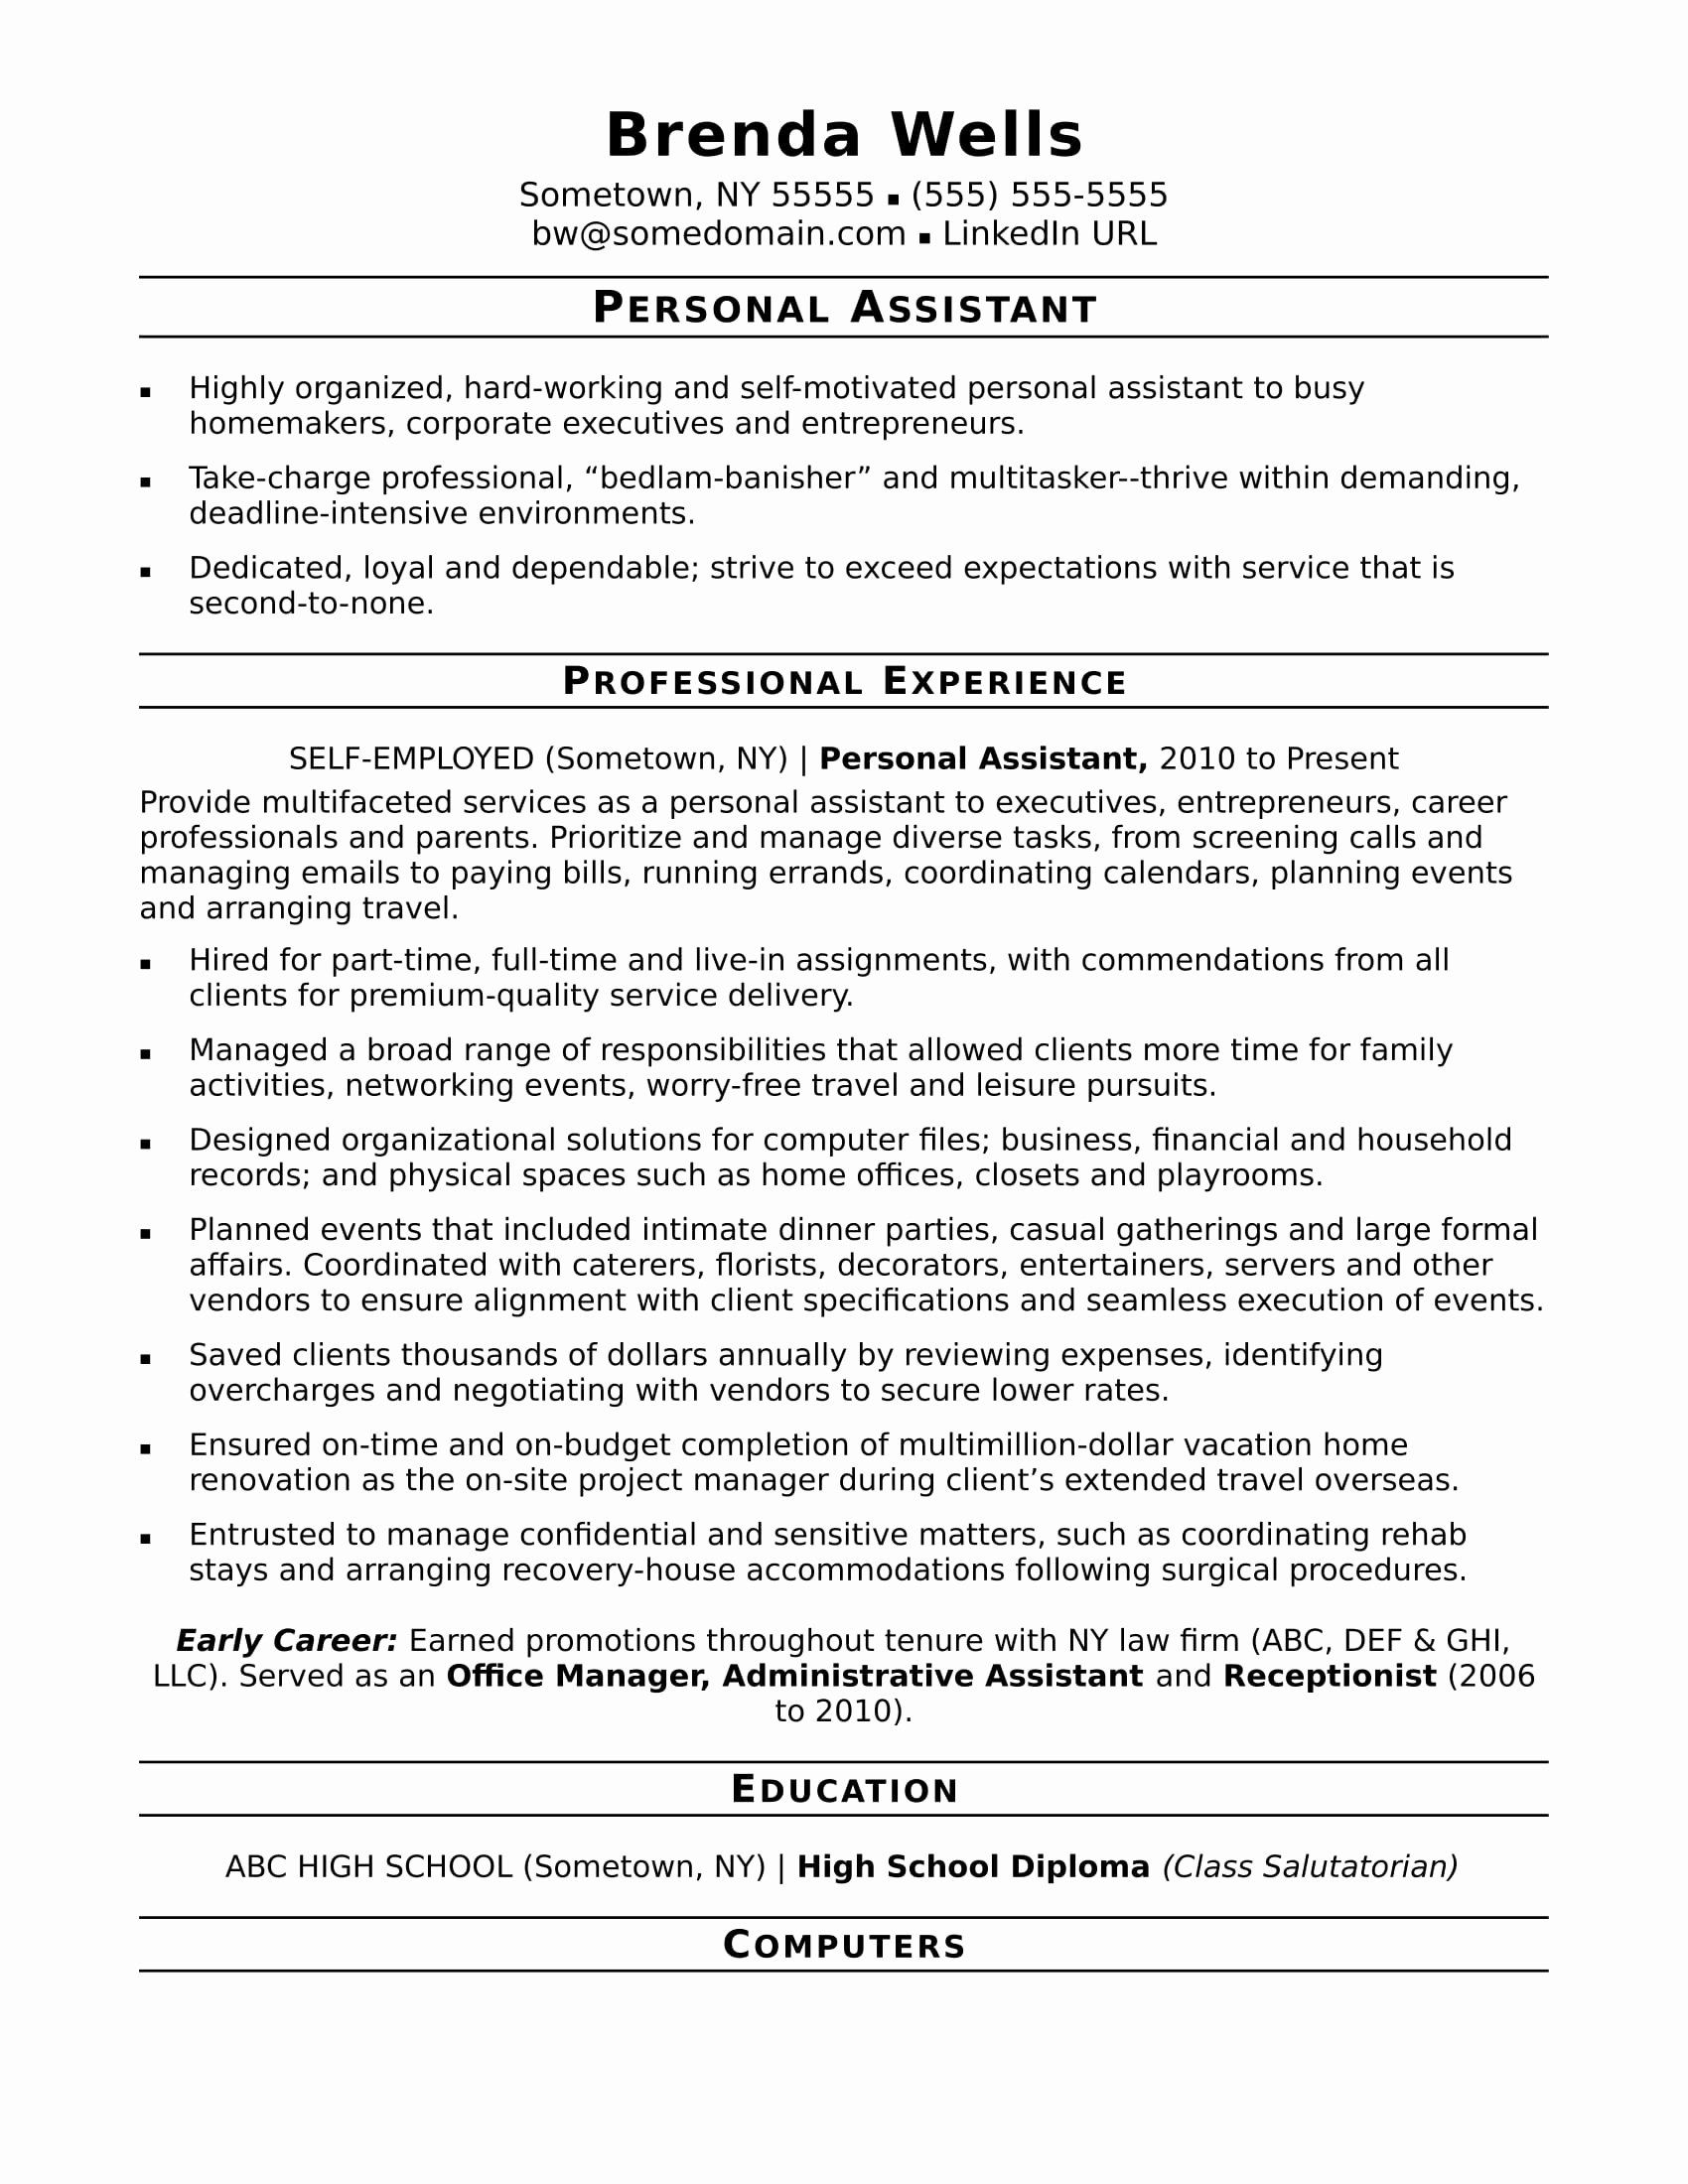 23 Admin assistant Job Description Resume in 2020